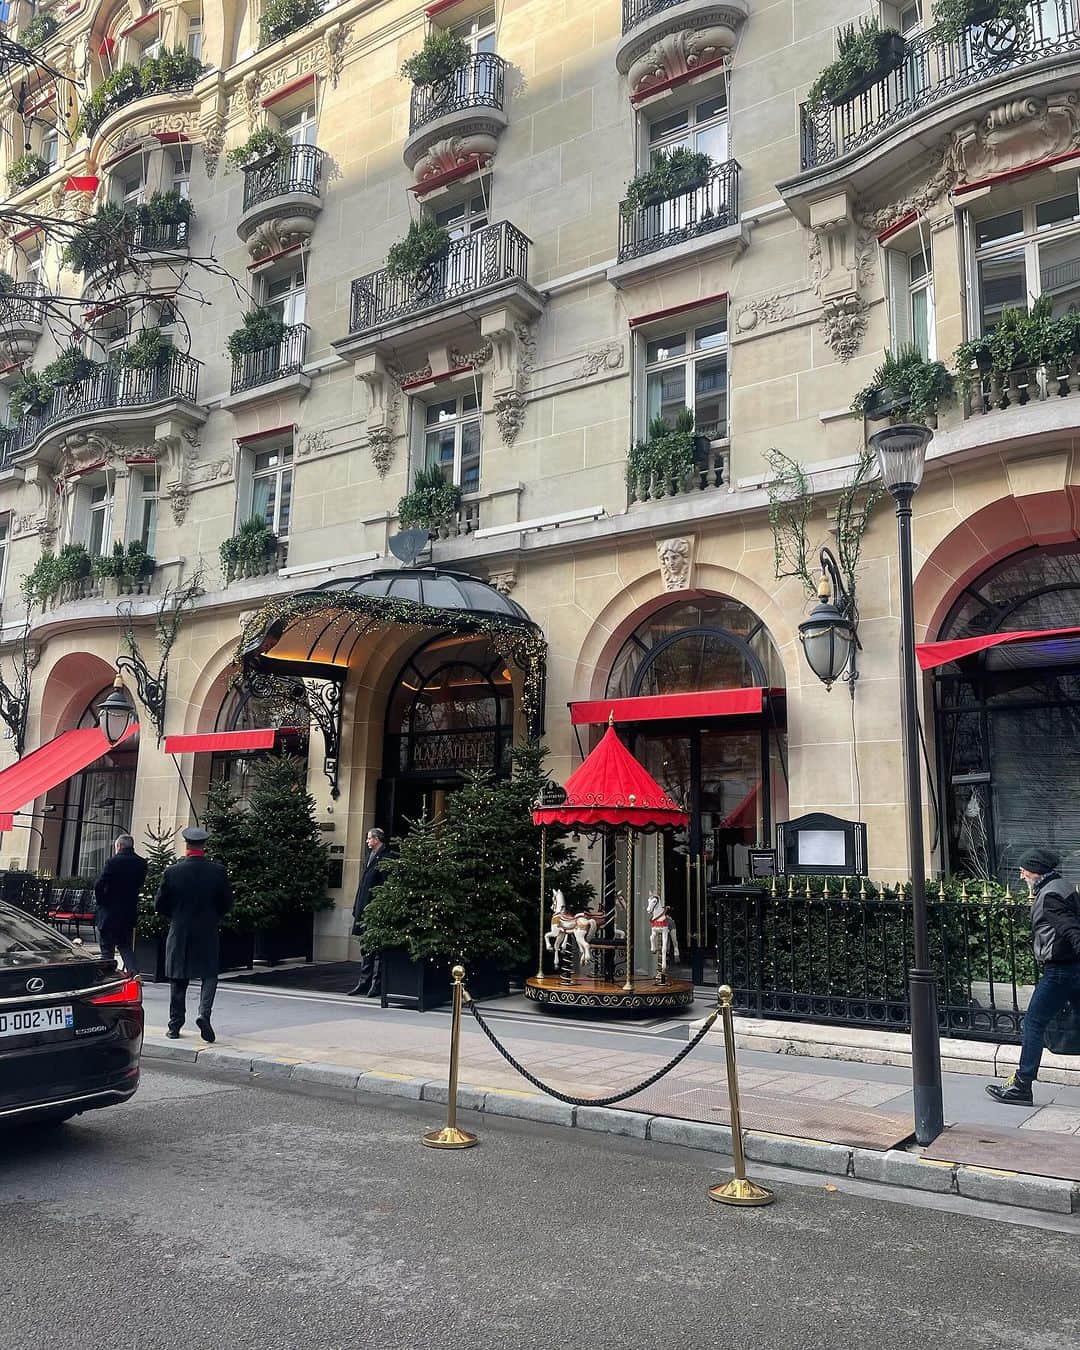 EFFIEのインスタグラム：「先日、パリ【パラスホテル】のクリスマスデコレーションを見にお散歩してきました♪  パラスホテルの称号を持つホテルはフランスに３０． そのうち約１２ホテルが、パリにあります。  フランス独自の5つ星ホテルを超える称号「パラス（Palace）」 一度「パラス」の称号を勝ち得ても　ホテルのミシュランの★と一緒で、常に審査が行われているので、常に高いクオリティを保たなければなりません。  @plaza_athenee 赤い屋根は、モンテーニュ通りのホテルプラザアテネ 中庭には、いつ頃からだろう？ ミニアイススケートリンクができます。 アフタヌーンティーなどを申し込んだら曜日によりますが、リンクを使えます。 （スケート場のOPEN時間が細かく決まっているので、要確認） 子供たちはいい思い出になる事でしょうね。  @fsgeorgevparis シャンゼリゼ通りからヴイトンの建物を入ったところにあるフォーシーズンズホテル ここは、いつもお花も美しく飾られているので、好きなホテルの一つです。 こちらは、GOLDだけど、GOLD単色で抑えているからか、ギラギラ感がなく 落ち着いたGOLDの印象です、 巨大な金熊ちゃんがお迎えしてくれます。  @rosewoodhoteldecrillon コンコルド広場にある老舗中の老舗 クリオンホテル。 実は、前は通るけれども、入った事はない人が多いと思います。 まぁ敷居は高いですからね、それがパラスホテルでもあるのですが。  白一色の落ち着いたツリーでした。 きらびやかさはないけれども、落ち着いた邸宅にいる感じ。  今年のクリスマスツリーはどこも　単色カラー　2色くらいまでが多いかも！  ということで、あえてお値段は申し上げませんが（笑）  来週末も、パリパラスホテルクリスマスデコをお伝えします！ 来週は、ホテルリッツ、モーリス、マンダリンホテルをご紹介予定です！  ステキな週末の夜をお過ごしくださいませ  :::::::::::::::::::::::::::::::  ご好評いただいてます ブリジットTanakaさんのショッピングバック残りわずかです。 是非パリ雑貨チェックしてください😍 https://effie.store/collections/marche  #efinternational #paris #パリ #パリ散歩 #nami散歩 #パリの街角 #ノエル #クリスマス🎄 #クリスマス #クリスマスデコレーション #フランス #france #シャンゼリゼ通り」